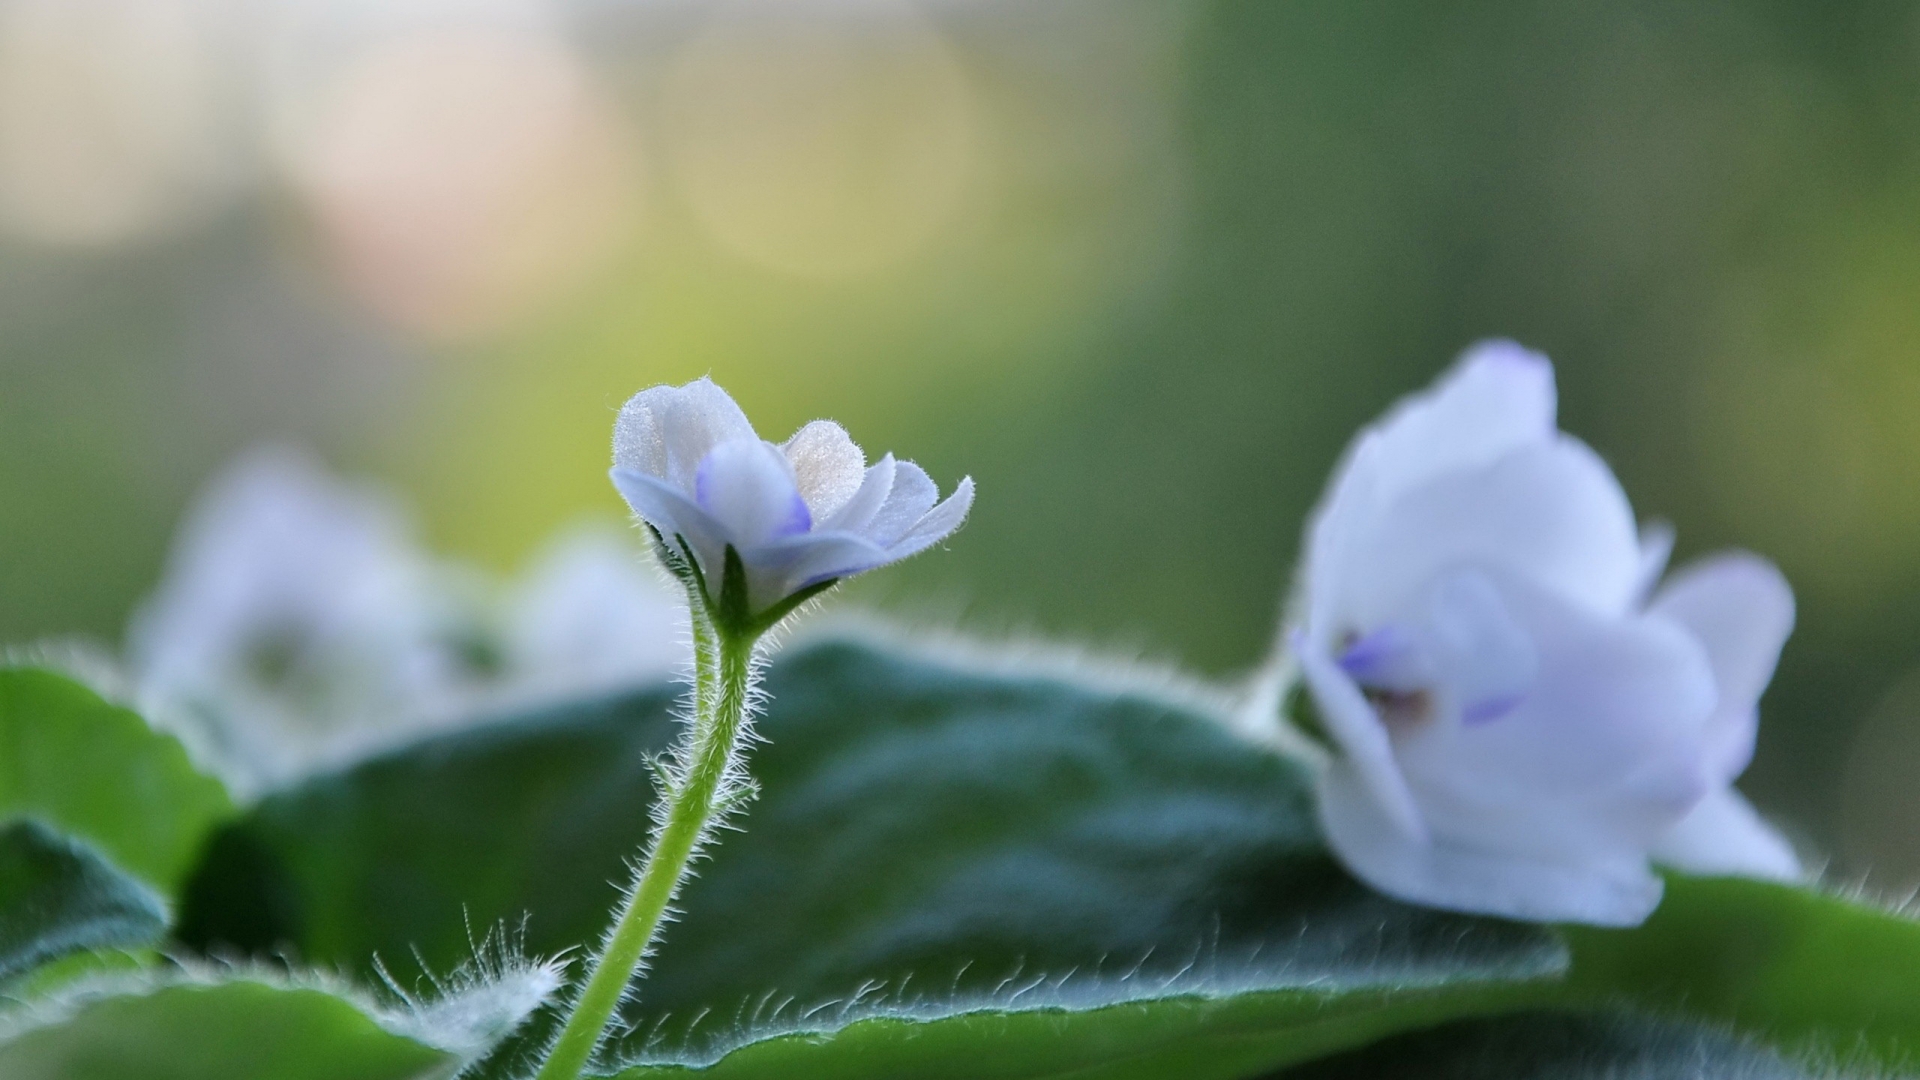 White Cute Flower for 1920 x 1080 HDTV 1080p resolution